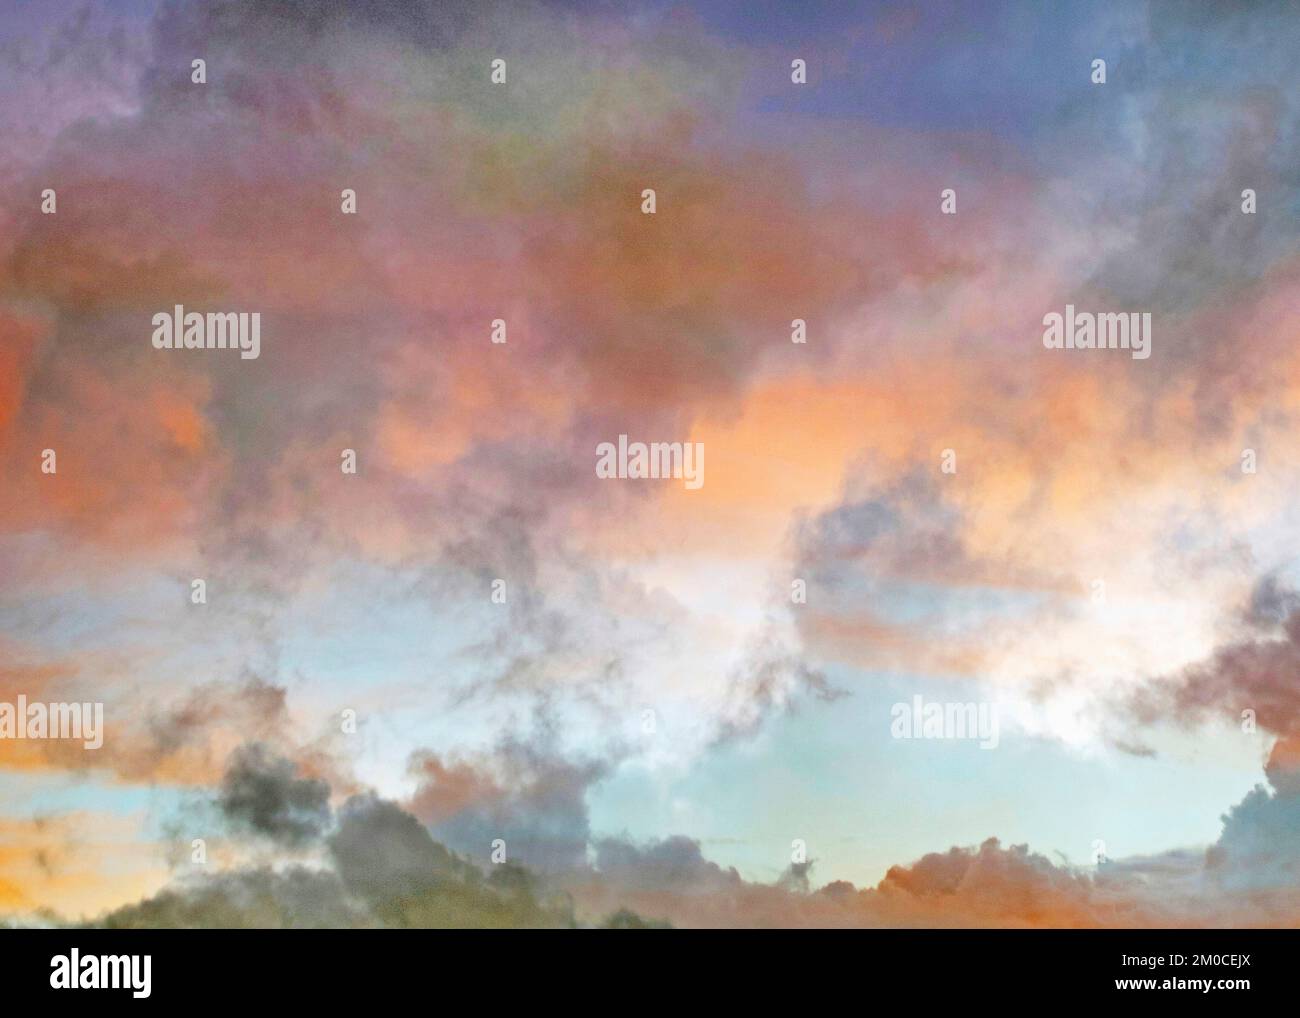 Künstlerische abstrakte und impressionistische Fotografie in Farbtönen und Farbtönen eines Herbsthimmels bei Sonnenuntergang in der jn Cardigan Bay Area mit Designelementen Stockfoto